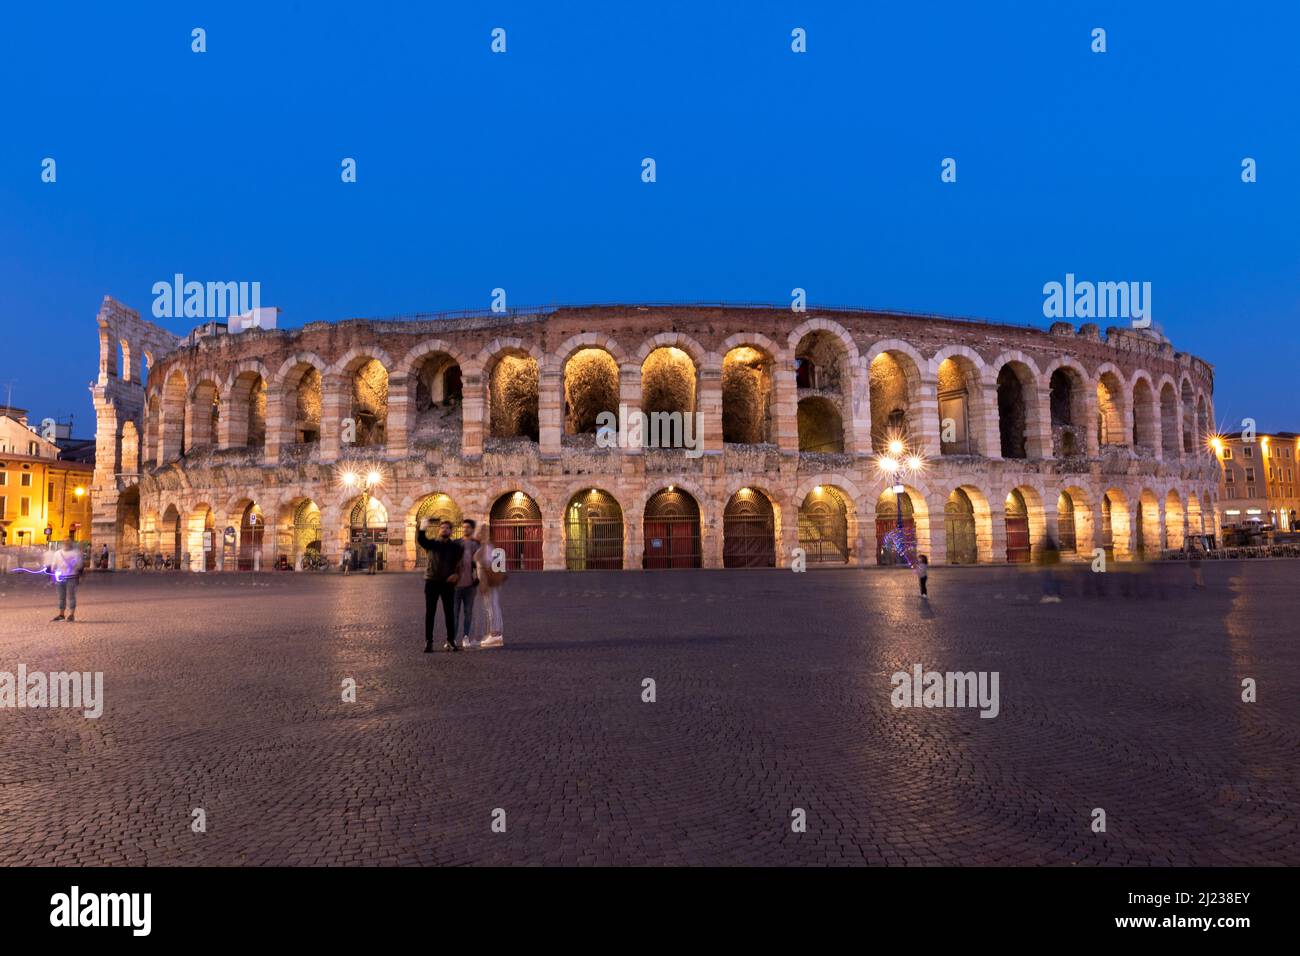 Italia, Verona, l'Arena di Verona, anfiteatro romano al crepuscolo con gente. Foto Stock